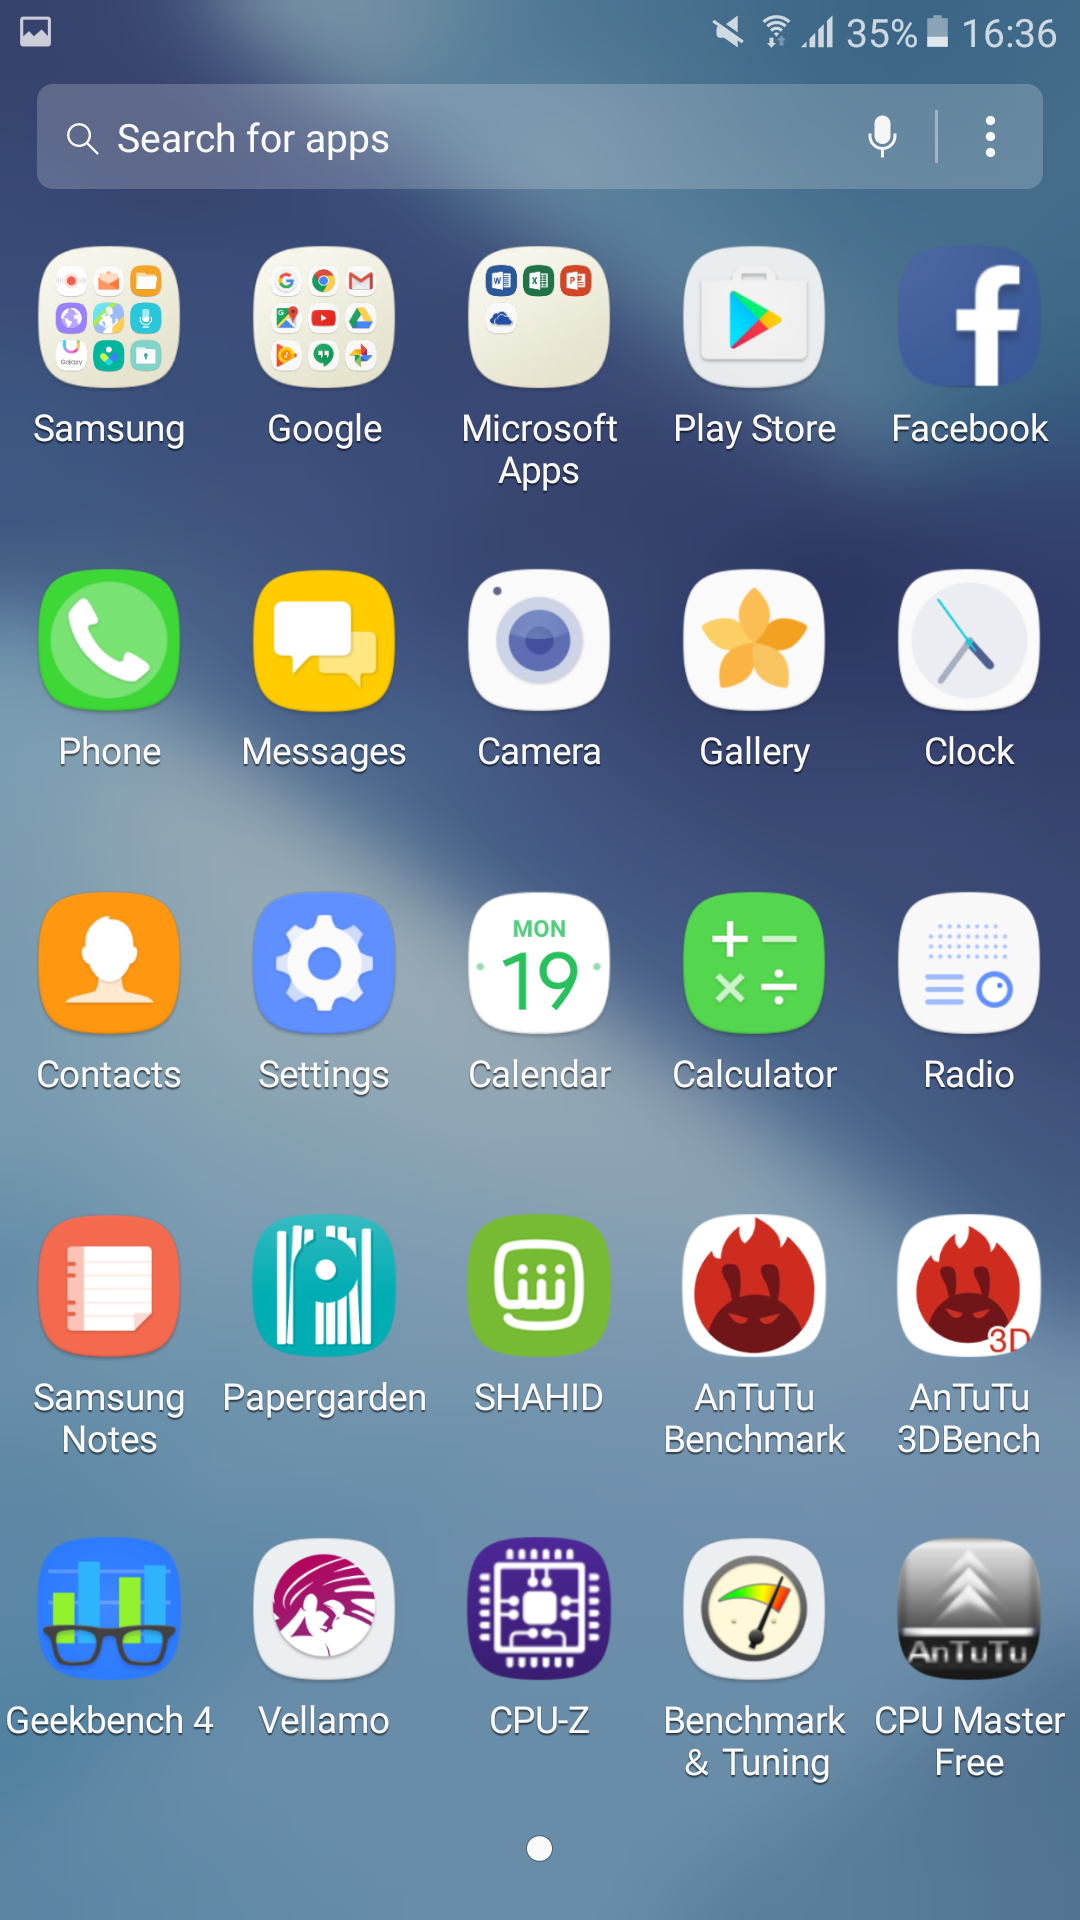 Samsung Galaxy Note 5 Android Nougat - HD Wallpaper 